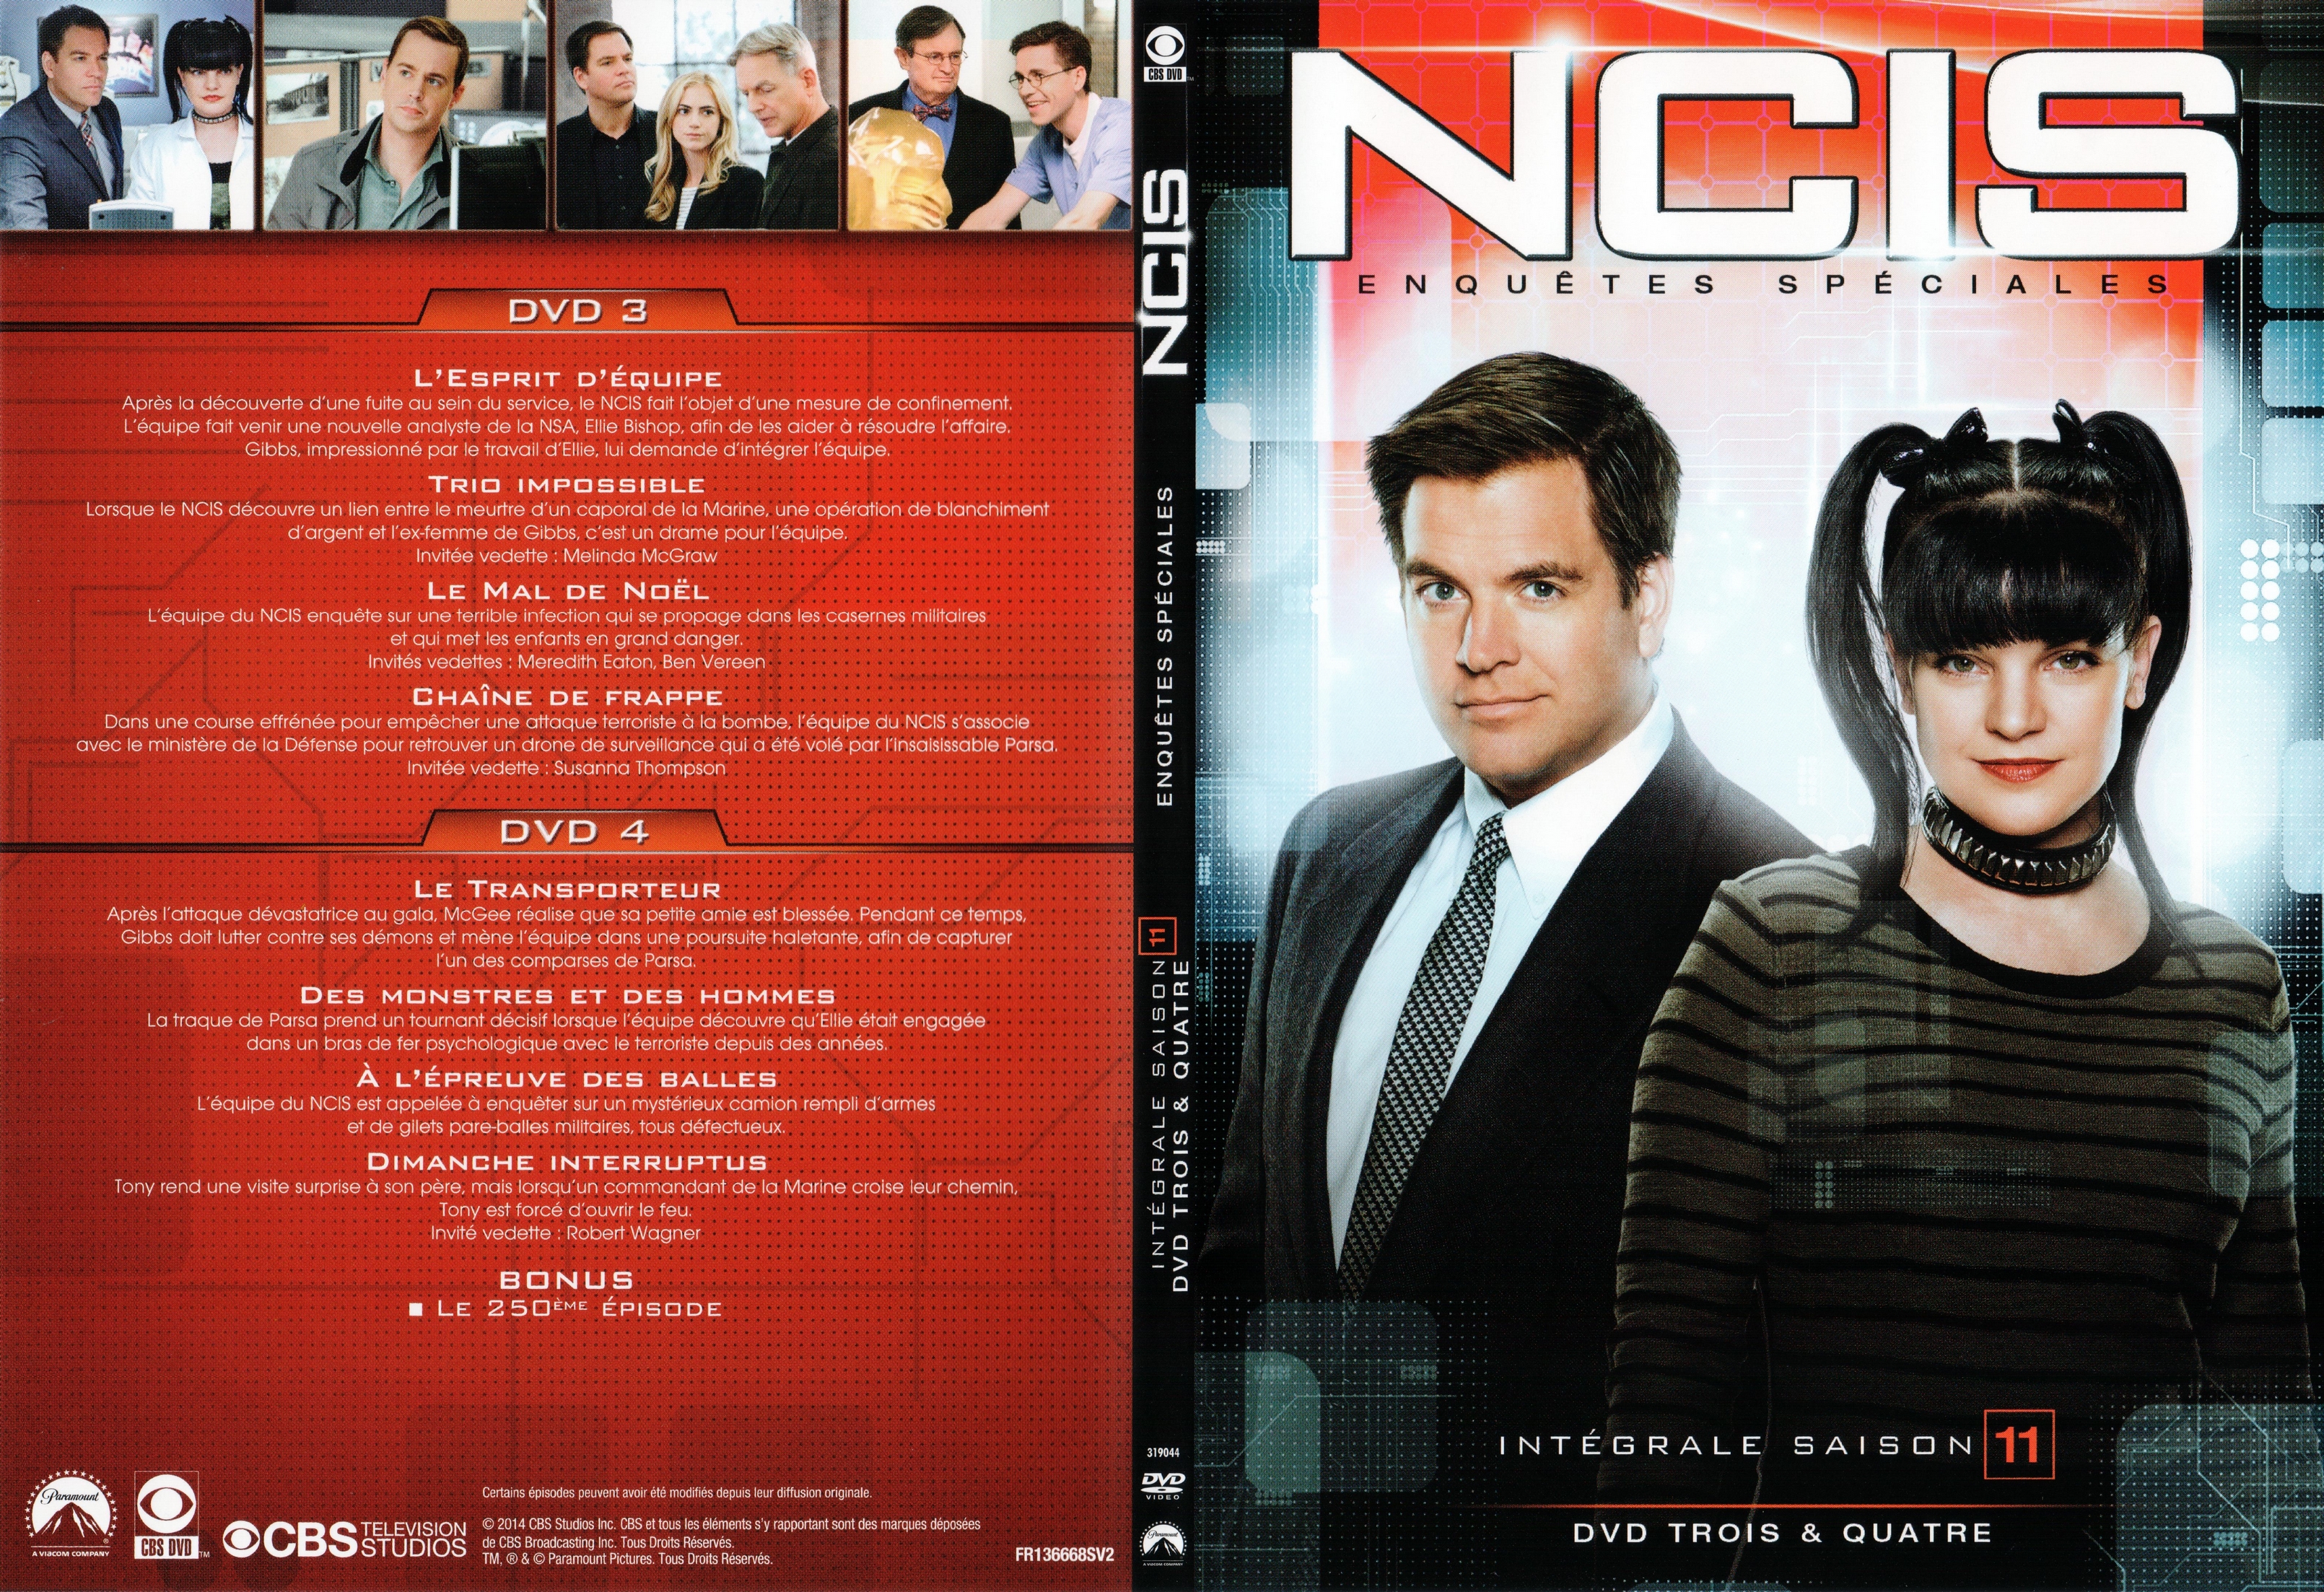 Jaquette DVD NCIS saison 11 DVD 2